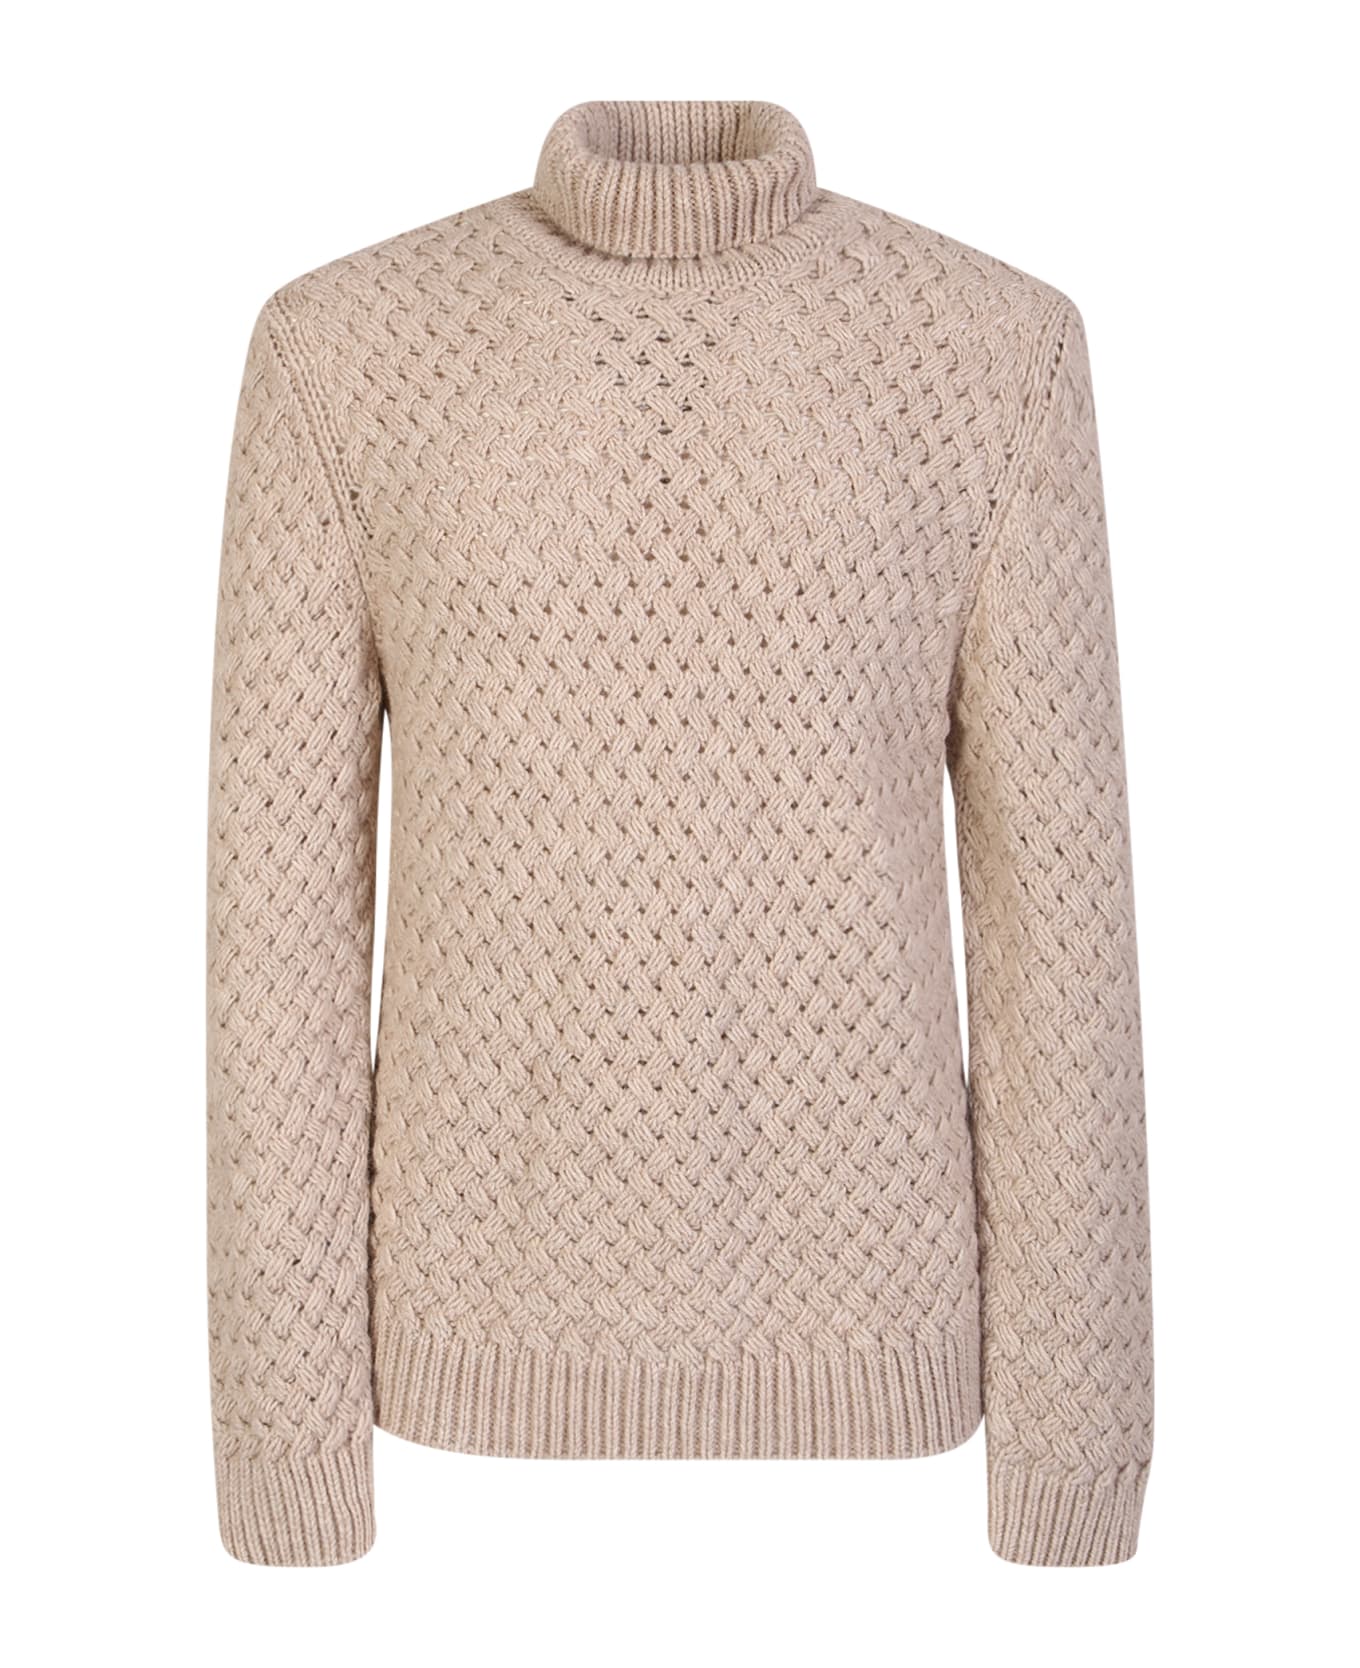 Lardini Woven Knit Pullover Ivory - White ニットウェア